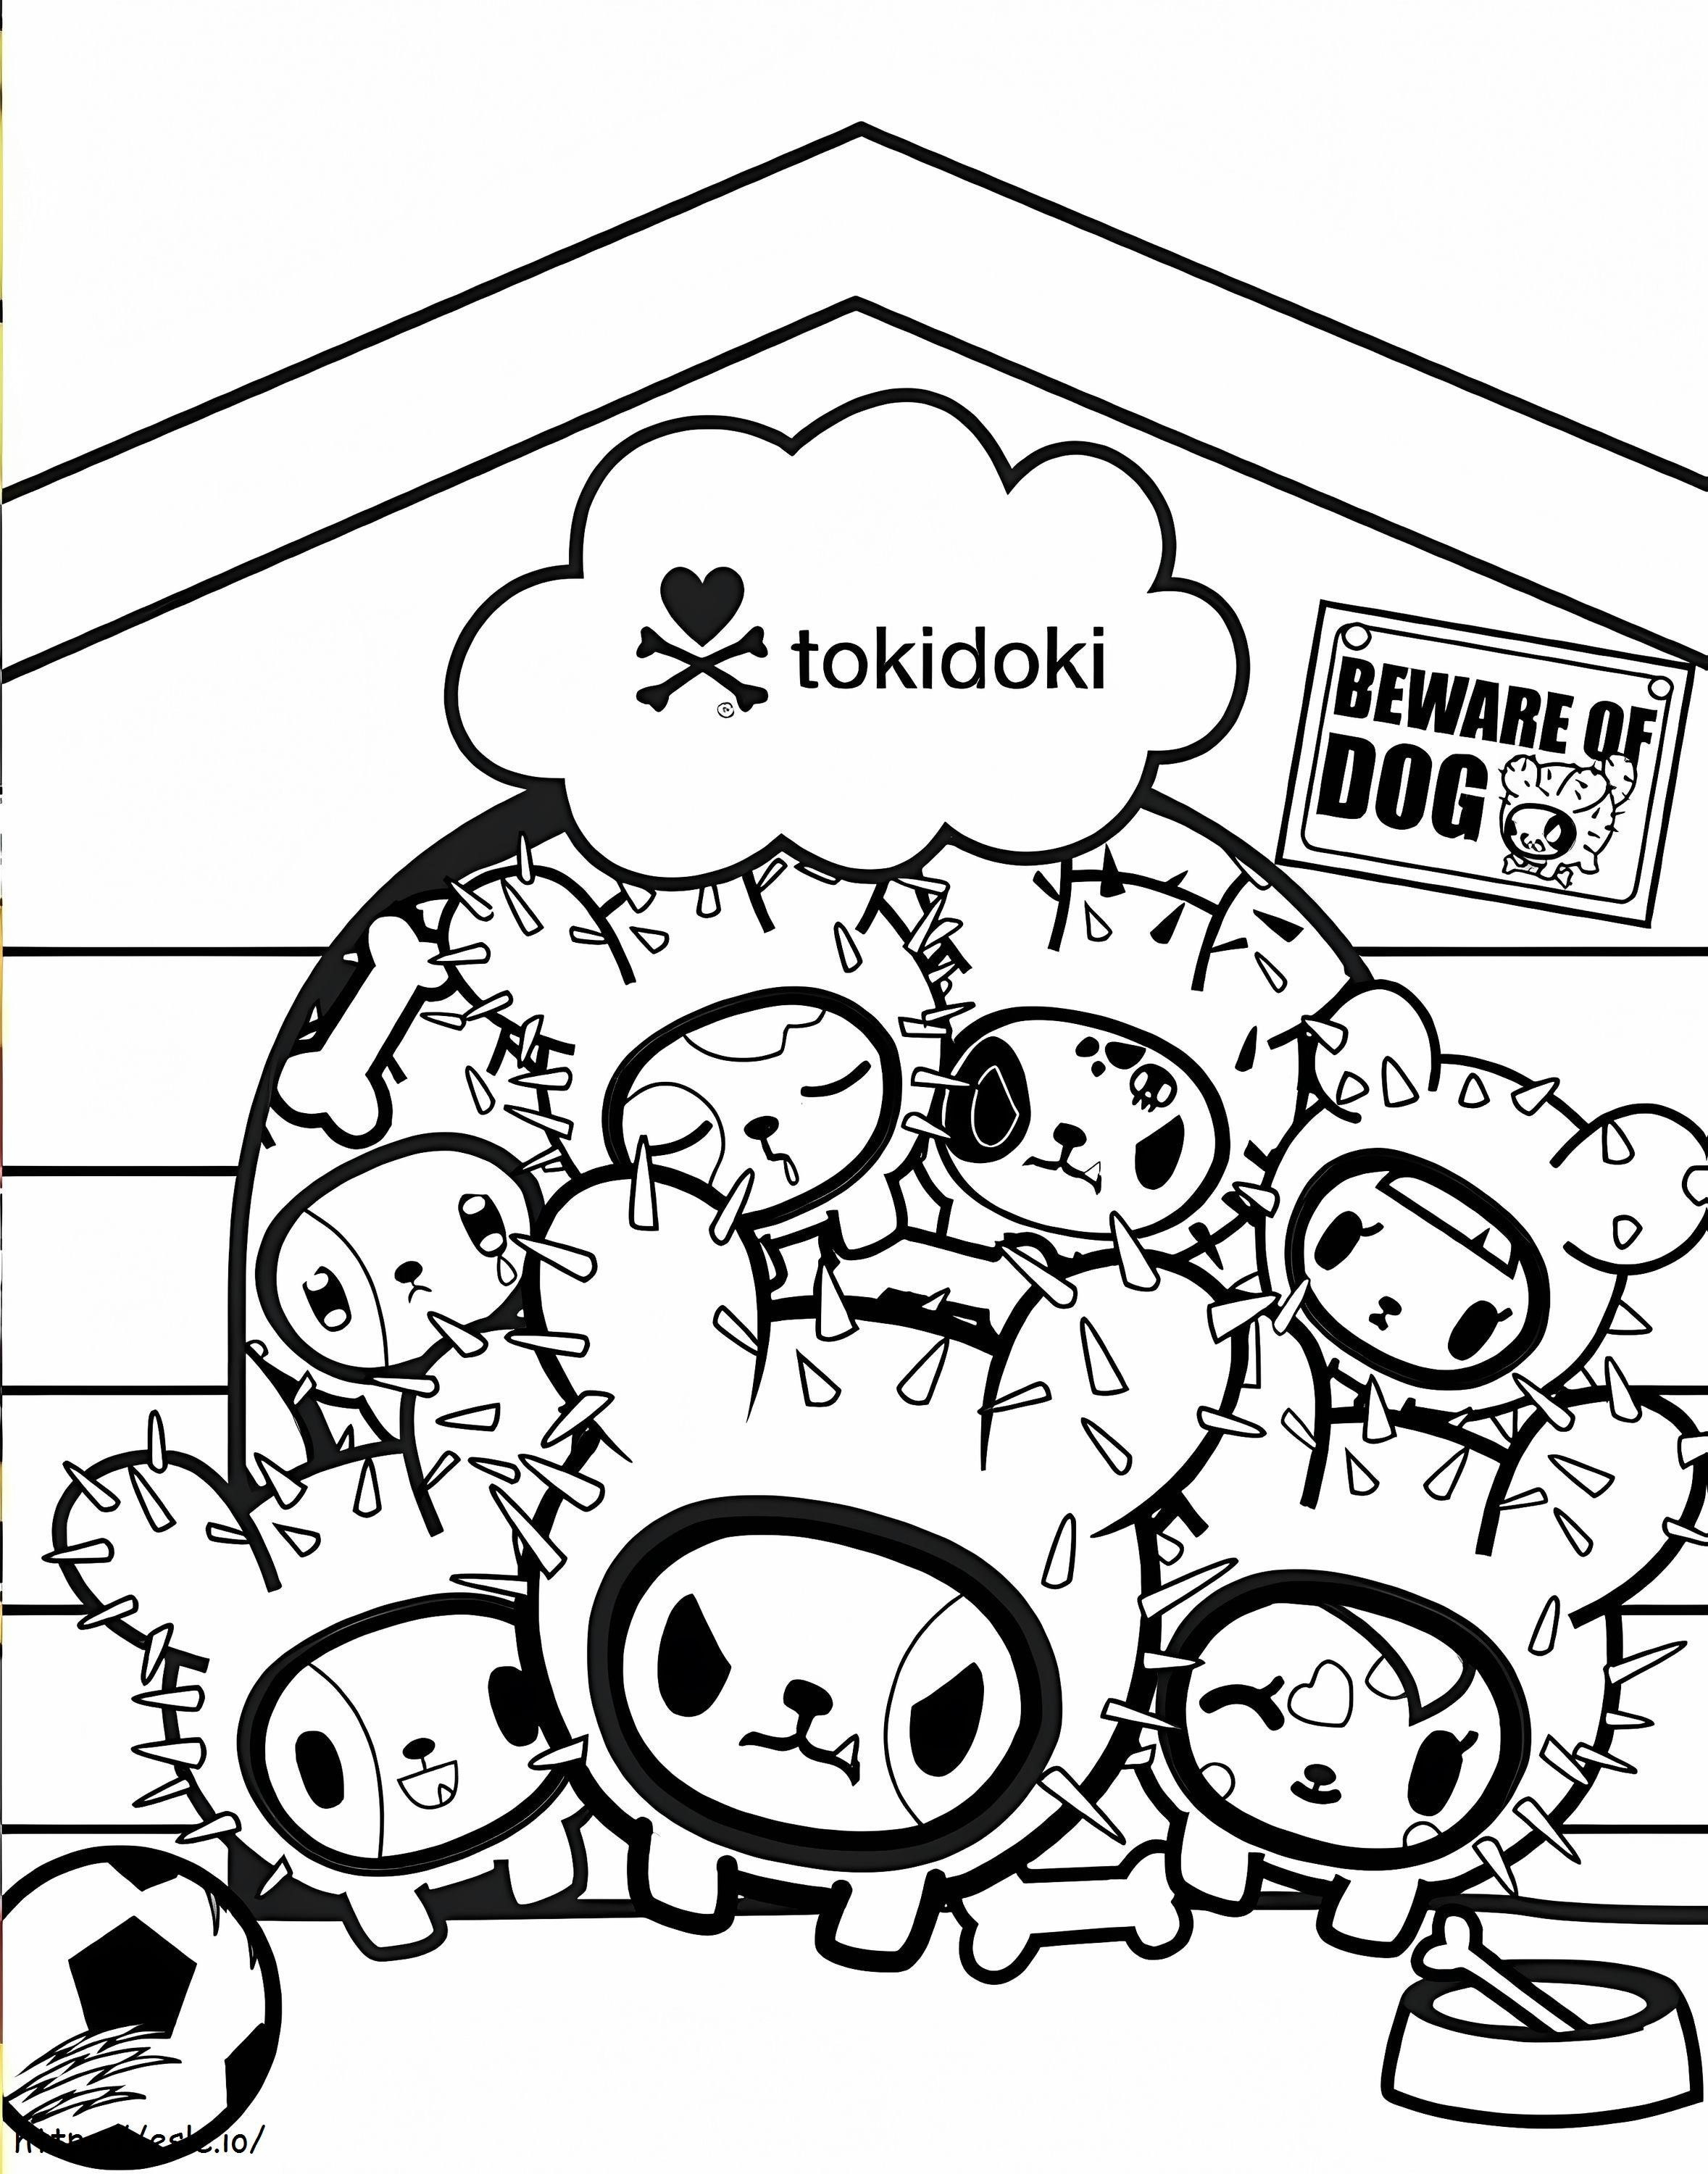 Tokidoki 1 coloring page